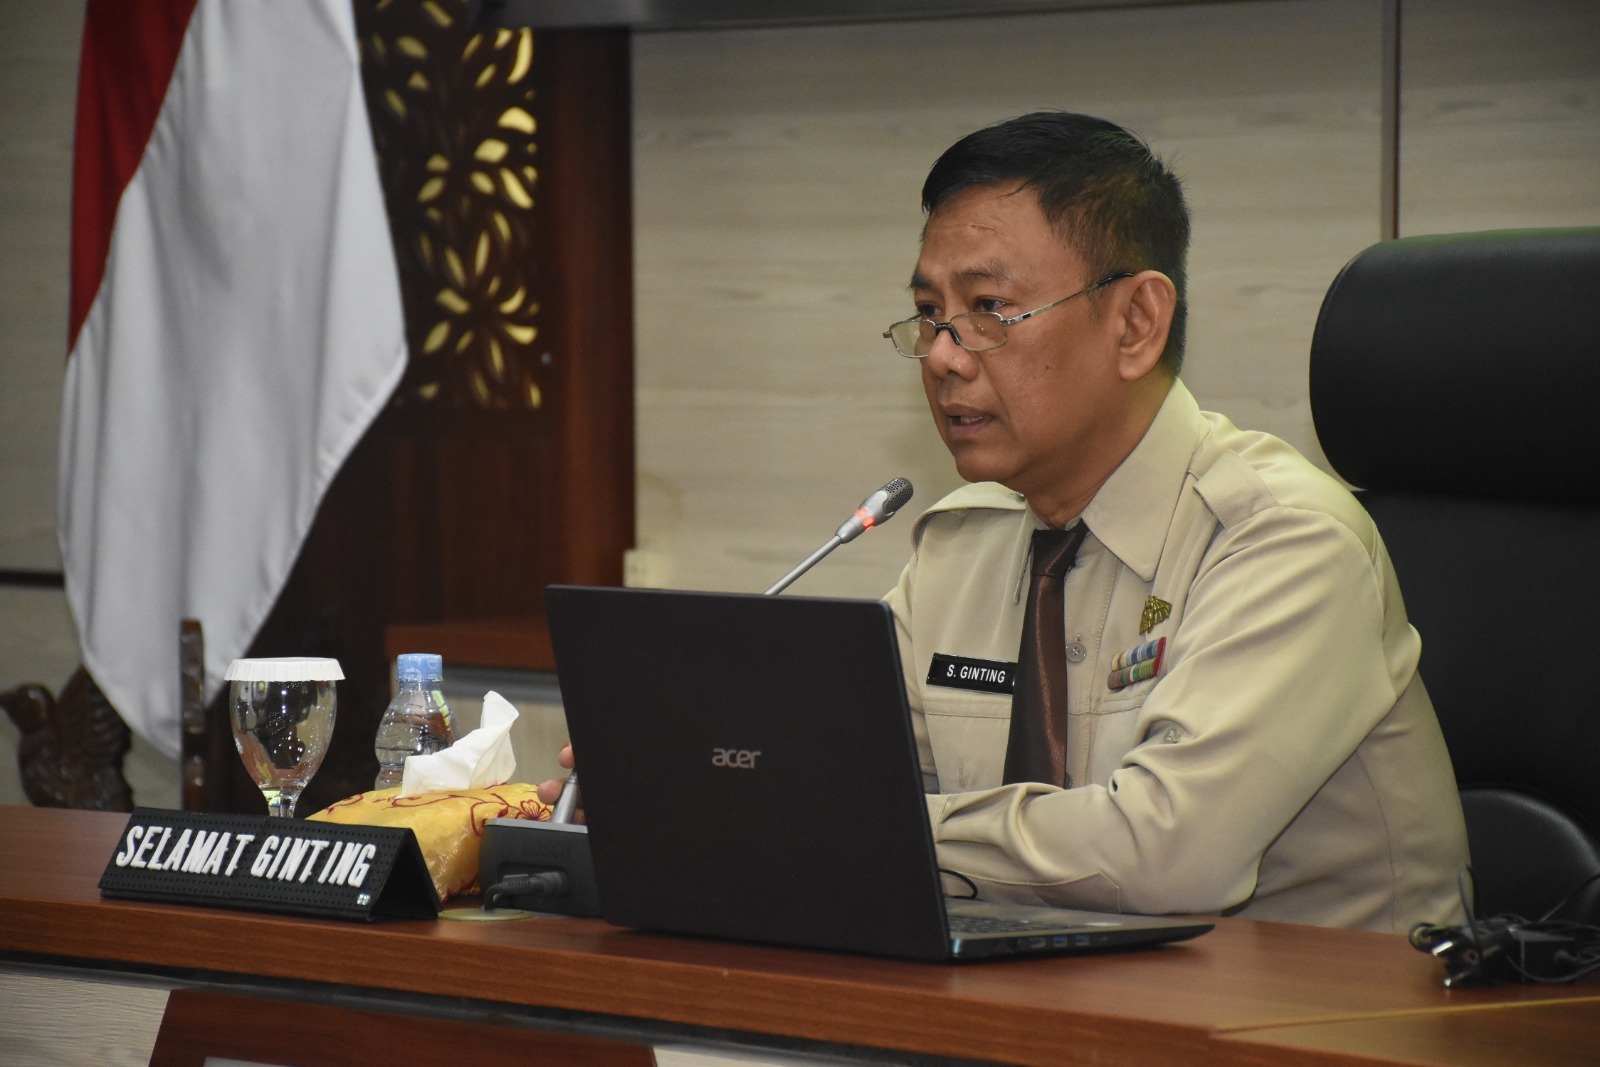 Pengamat: TNI Bisa Jaga Kejaksaan dan Tangkap Oknum Polisi untuk Kepentingan Negara